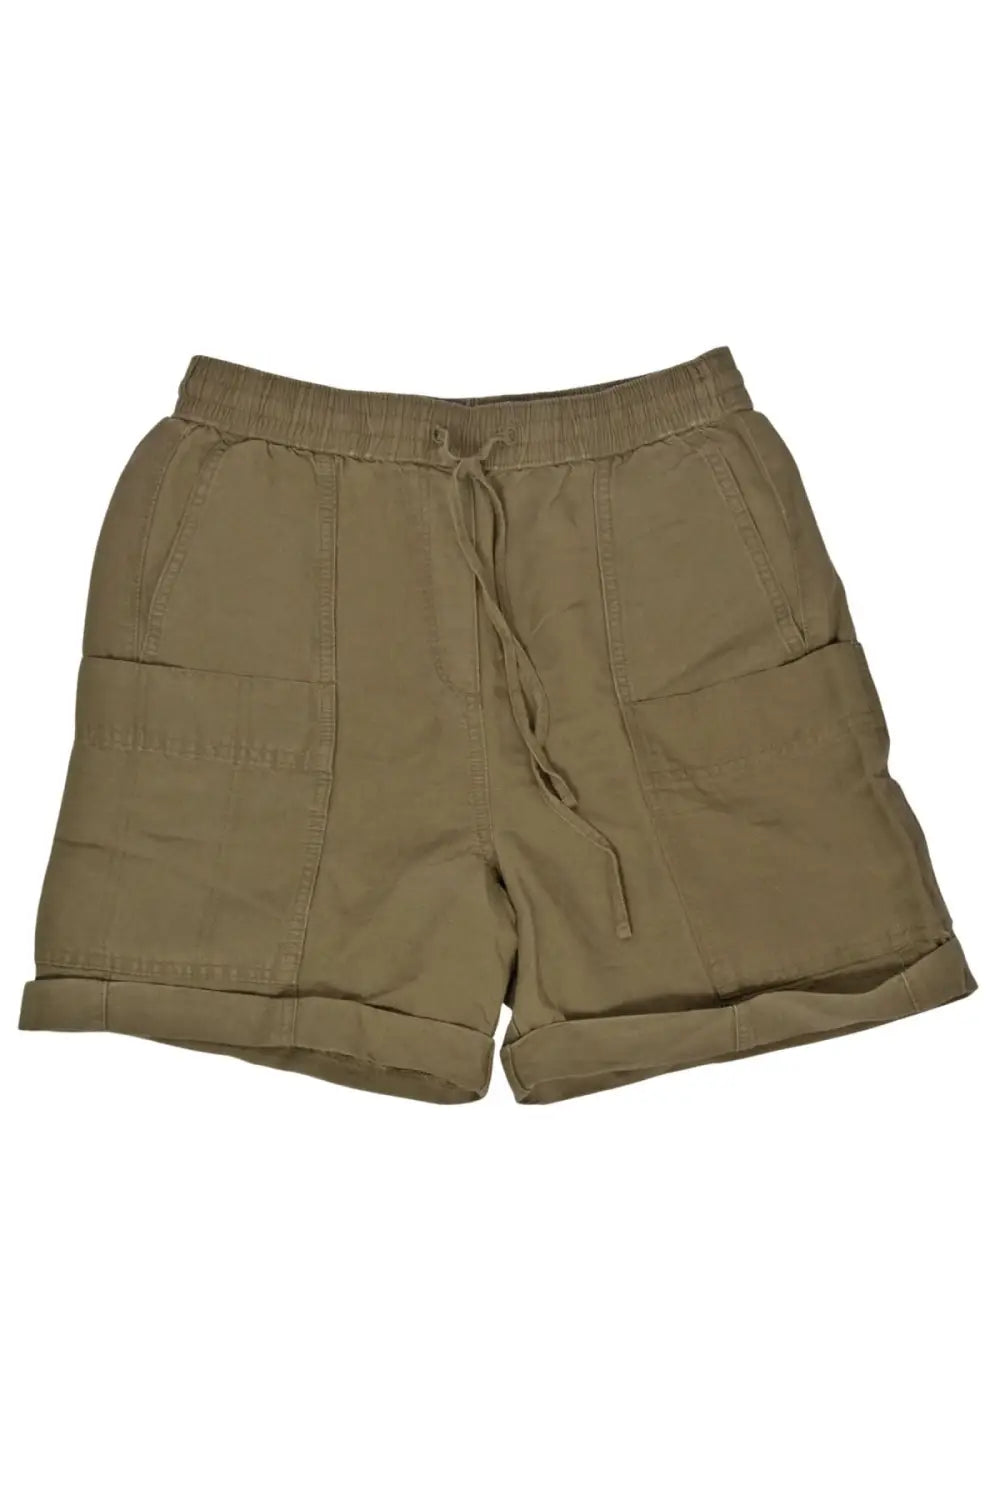 M&S Linen Comfort Utility Shorts